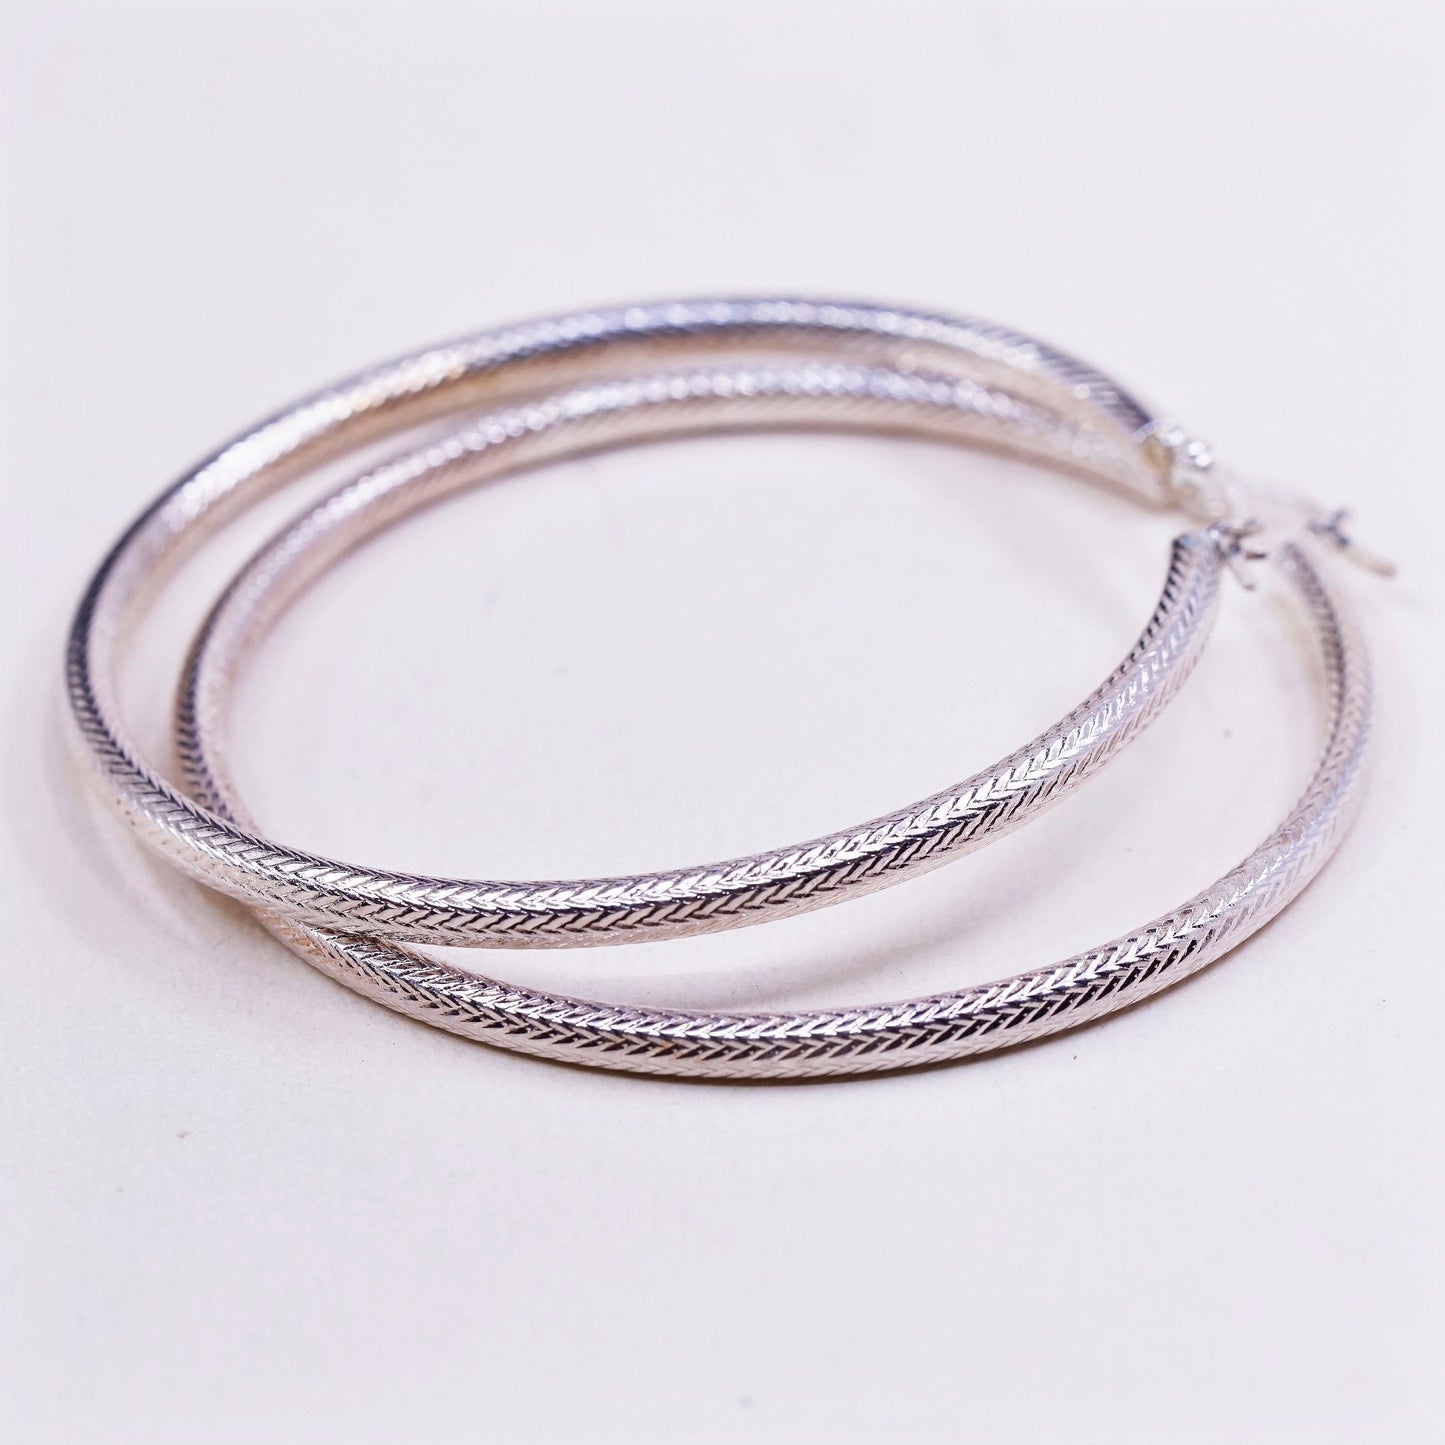 2.5”, vtg JCM gold over sterling silver handmade earrings, 925 textured hoops